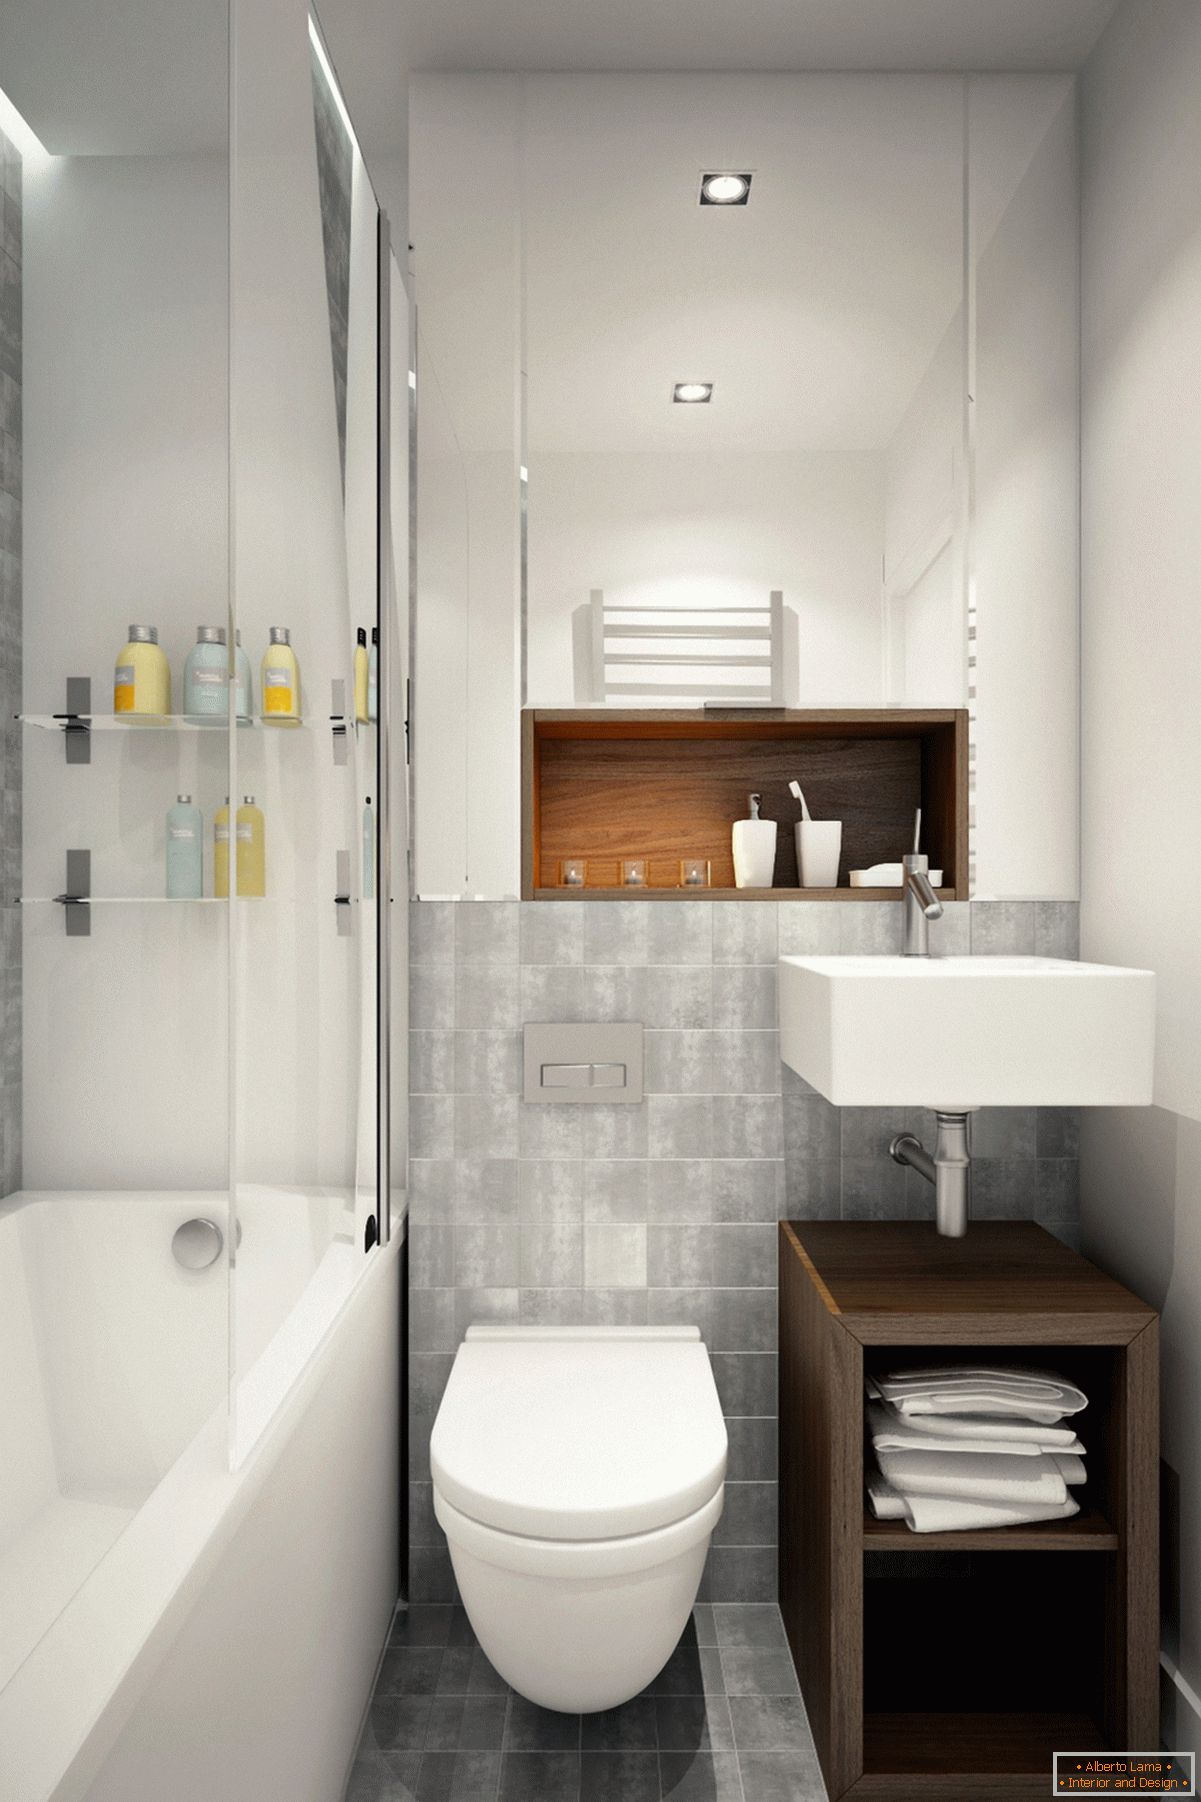 Badezimmerdesign in Weiß